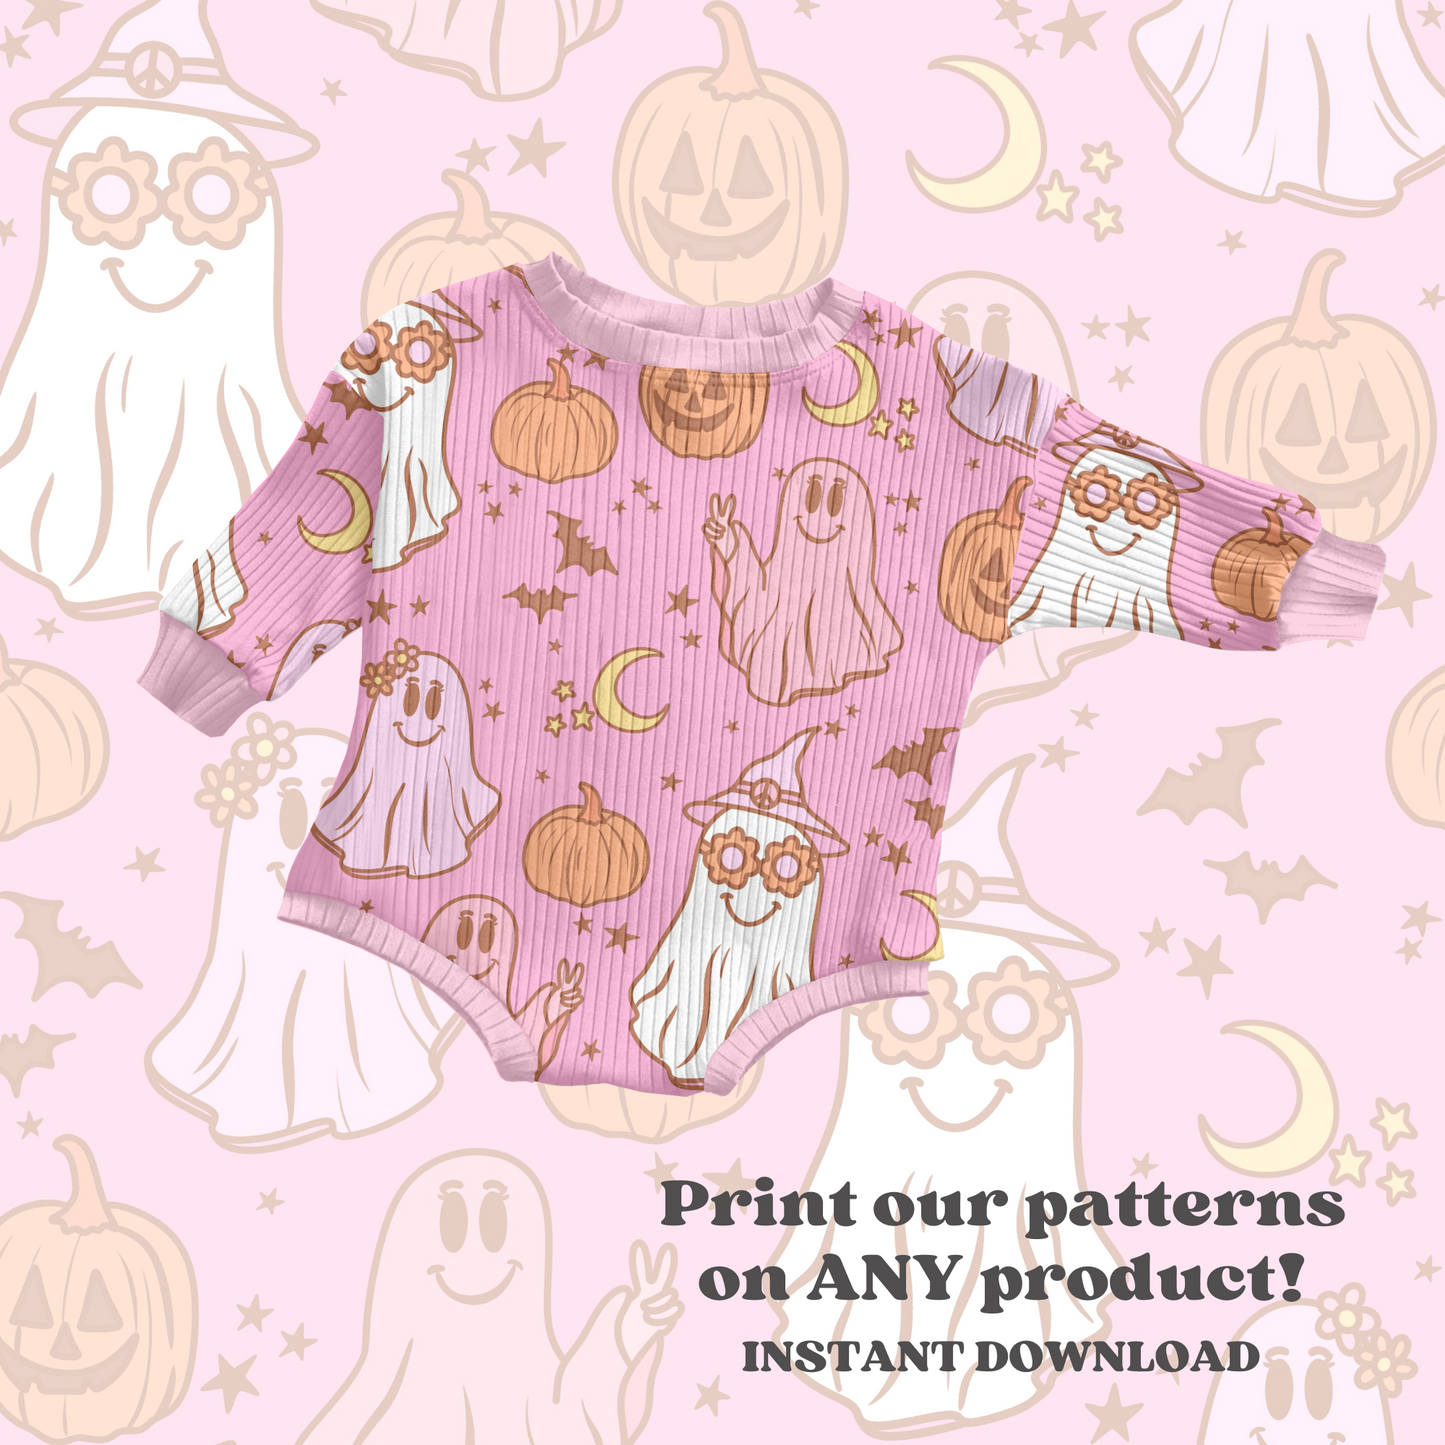 Retro Halloween Pattern Pink Background